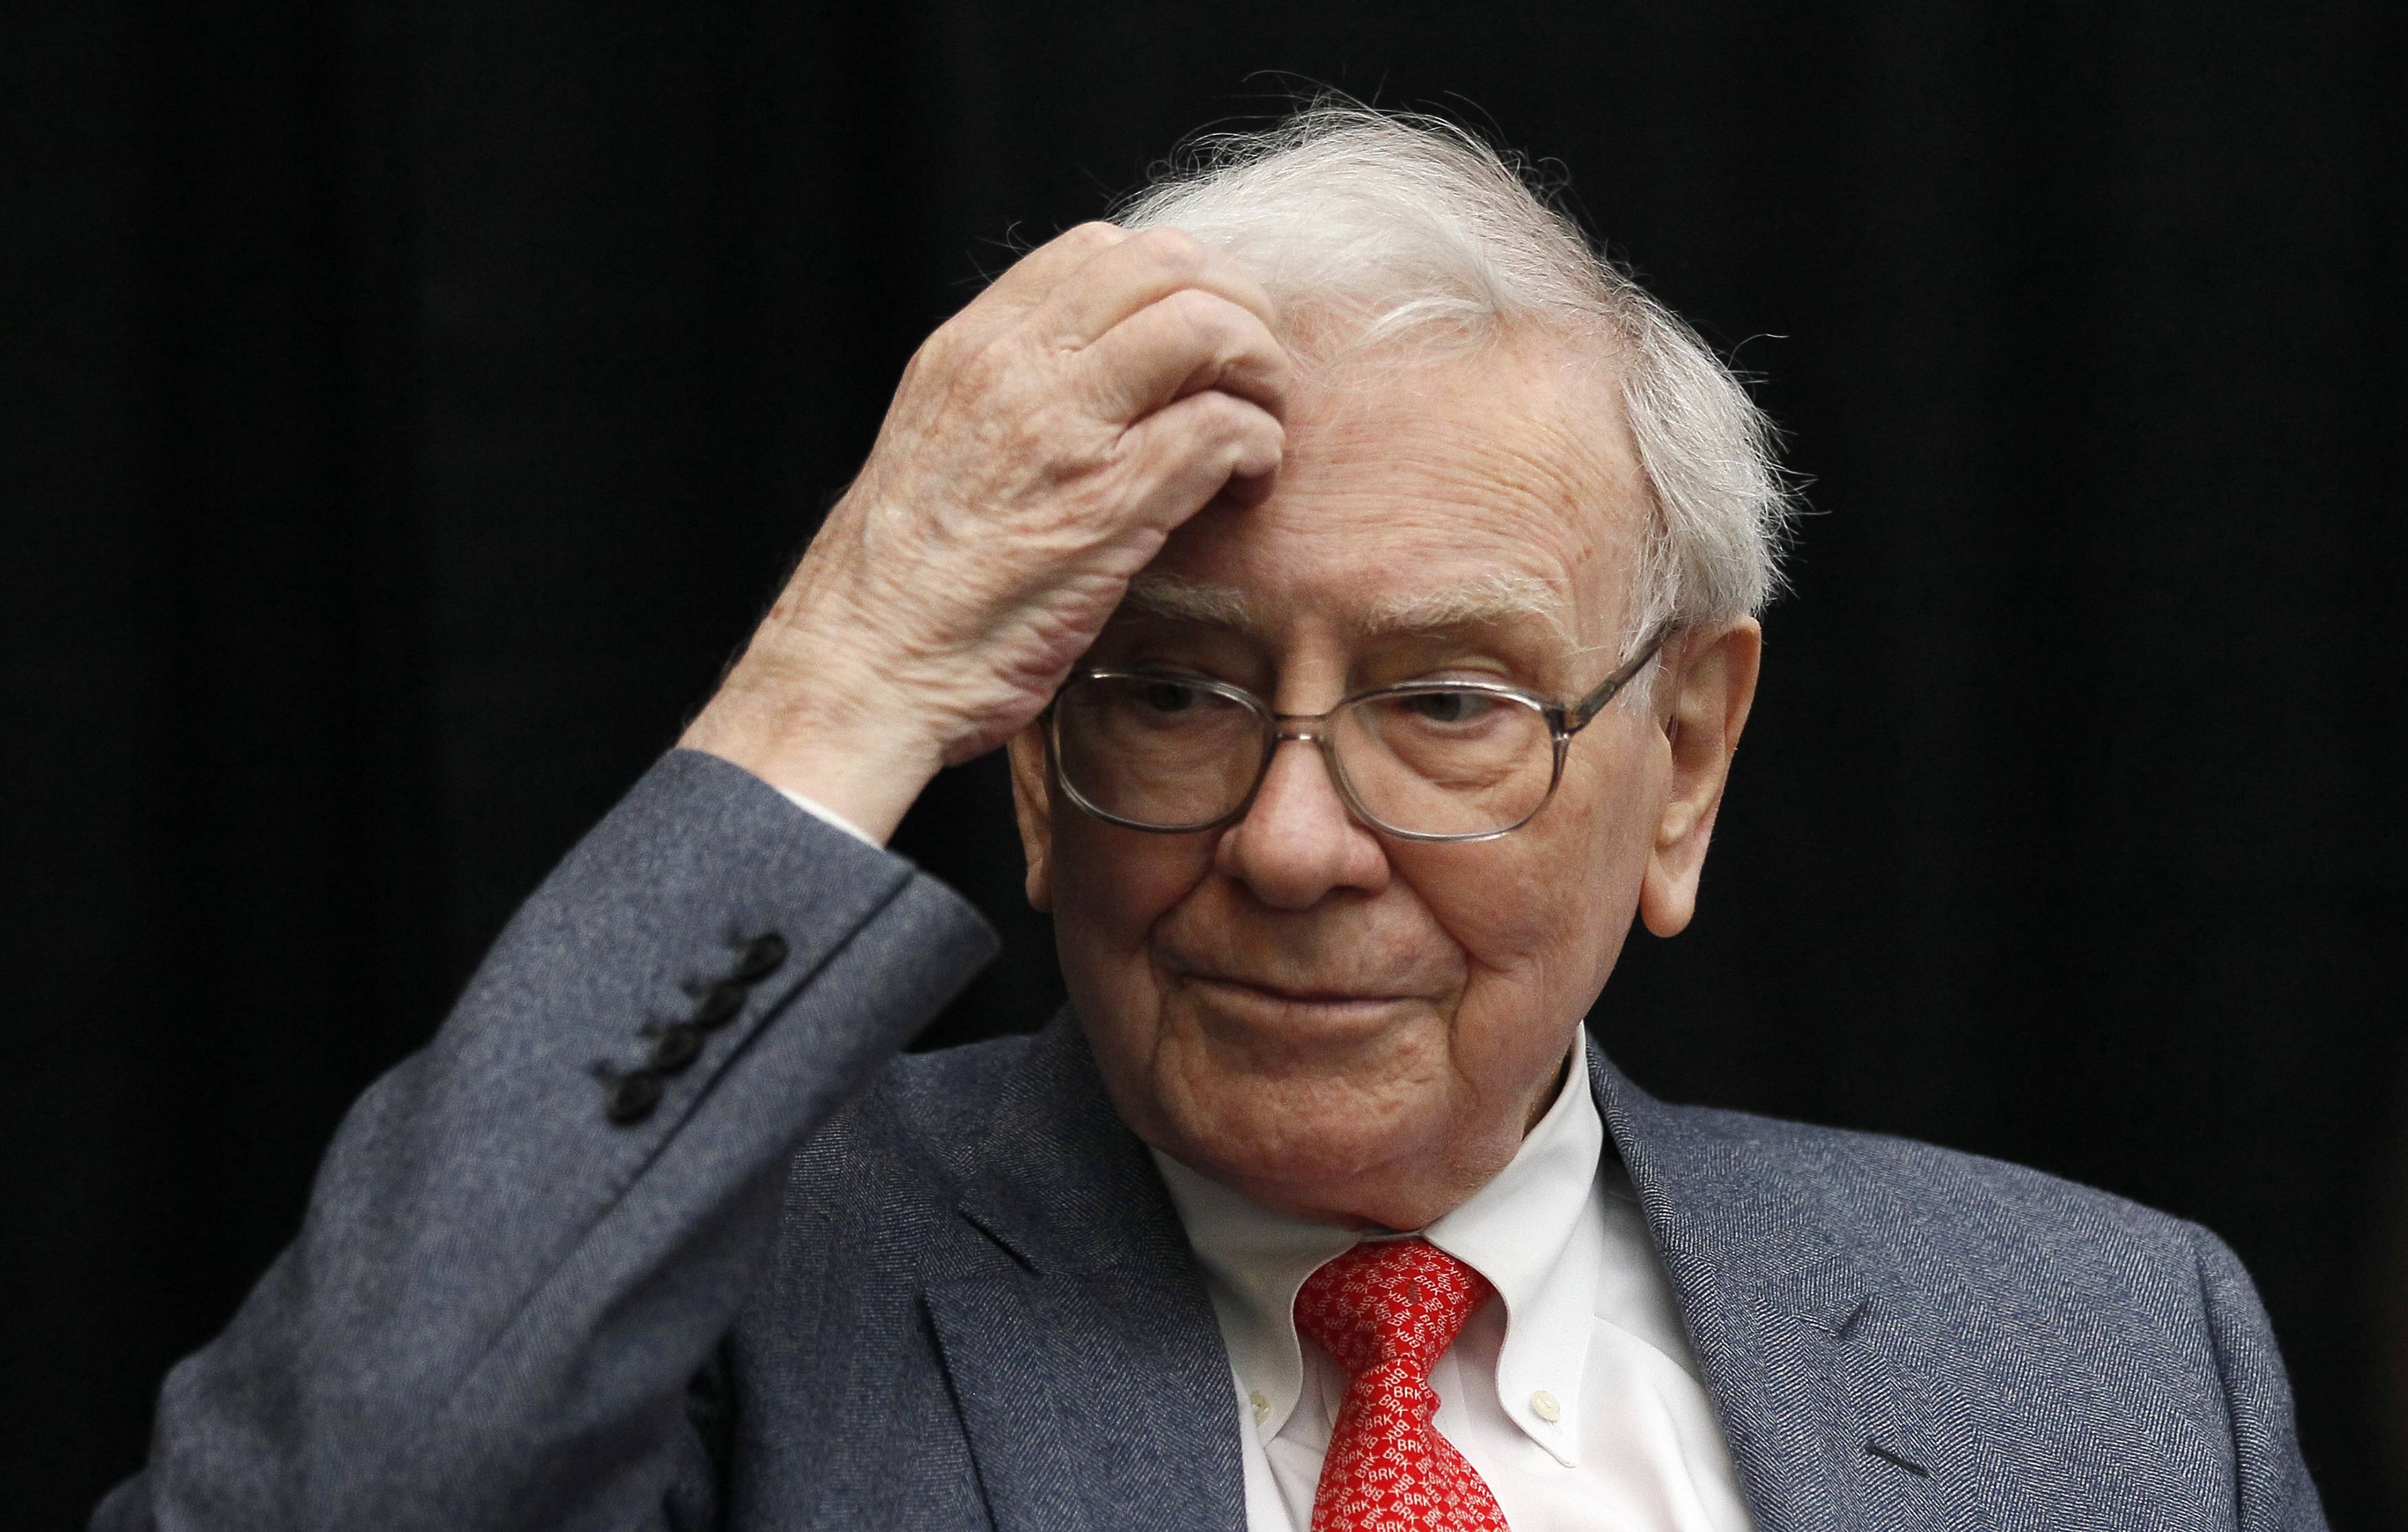 US billionaire Warren Buffett optimistic on stocks